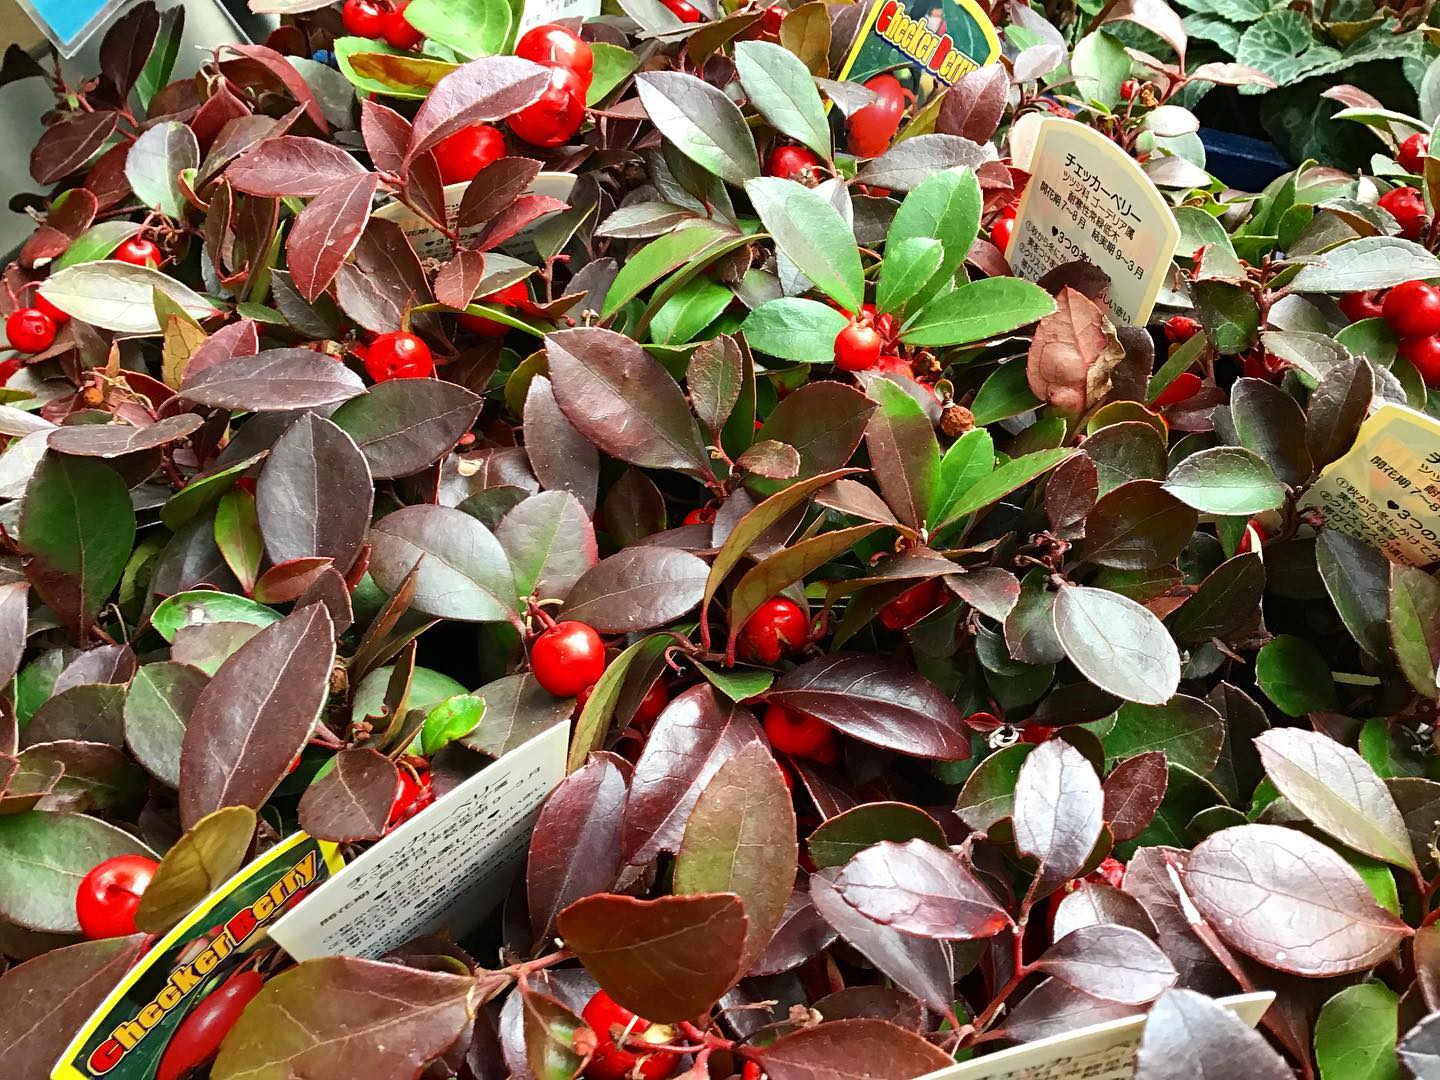 .
チェッカーベリーは寒さに強く、冬の間（11月〜3月）赤い実が観賞できます
.
ビオラやハボタンなどとの組み合わせ、さらにはシルバーリーフなどのさまざまな葉ものと組み合わせて、クリスマスやお正月用の飾りに利用されます‍♀️
.
鉢の縁から垂らすような使い方をすると赤い実がよりいっそう目立ちますよ◎
.
ぜひお買い求めください♪
.
お気軽にお問い合わせください
.
モンソーフルールアトレ川崎店
★★★★★★★★★★★
〒210-0007
神奈川県川崎市川崎区駅前本町26-1
アトレ川崎1F
TEL &FAX044-200-6701
営業時間:10:00〜21:00
★★★★★★★★★★★
.